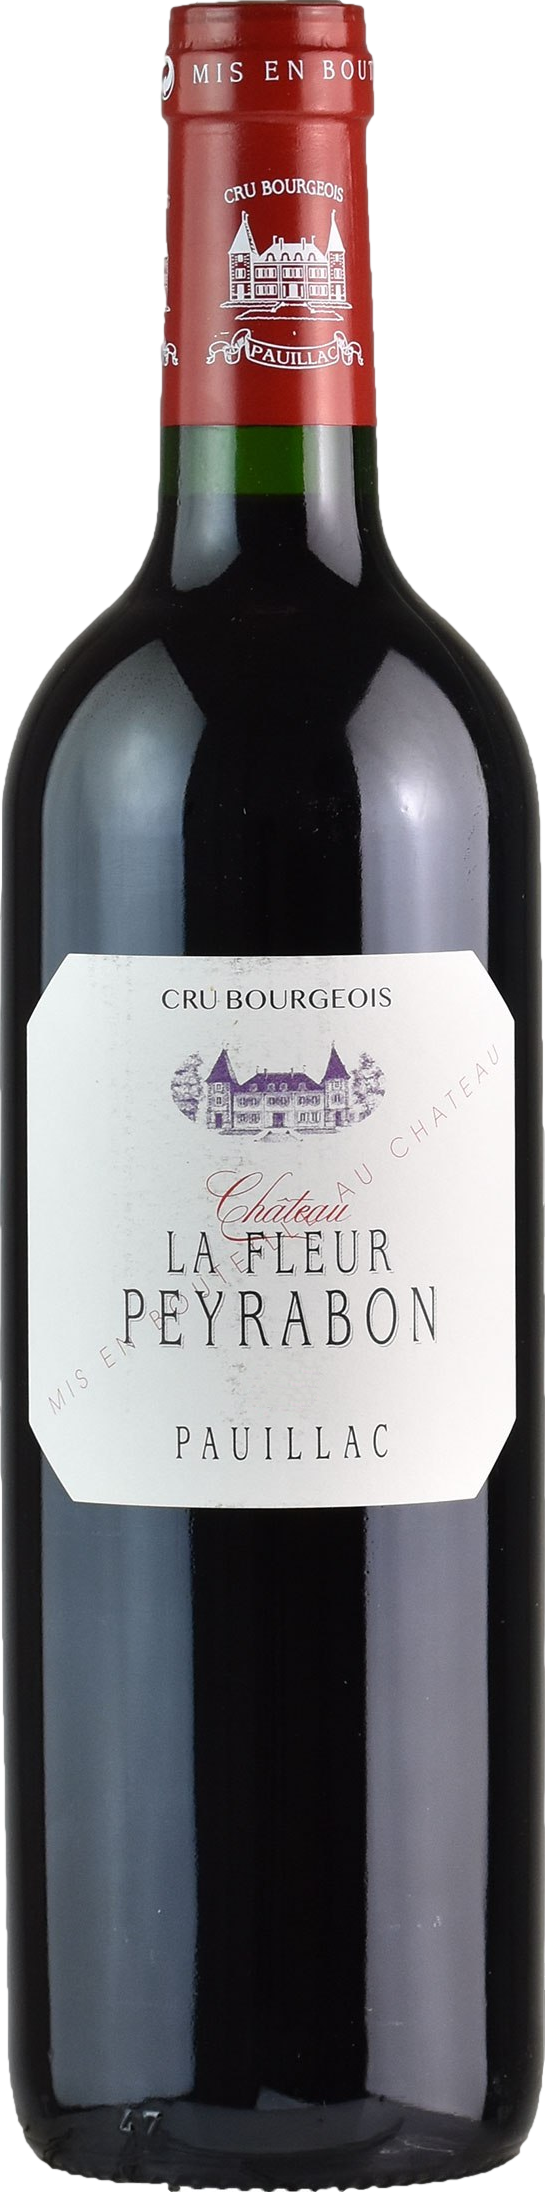 Chateau La Fleur Peyrabon Pauillac 2019 Červené 13.9% 0.75 l